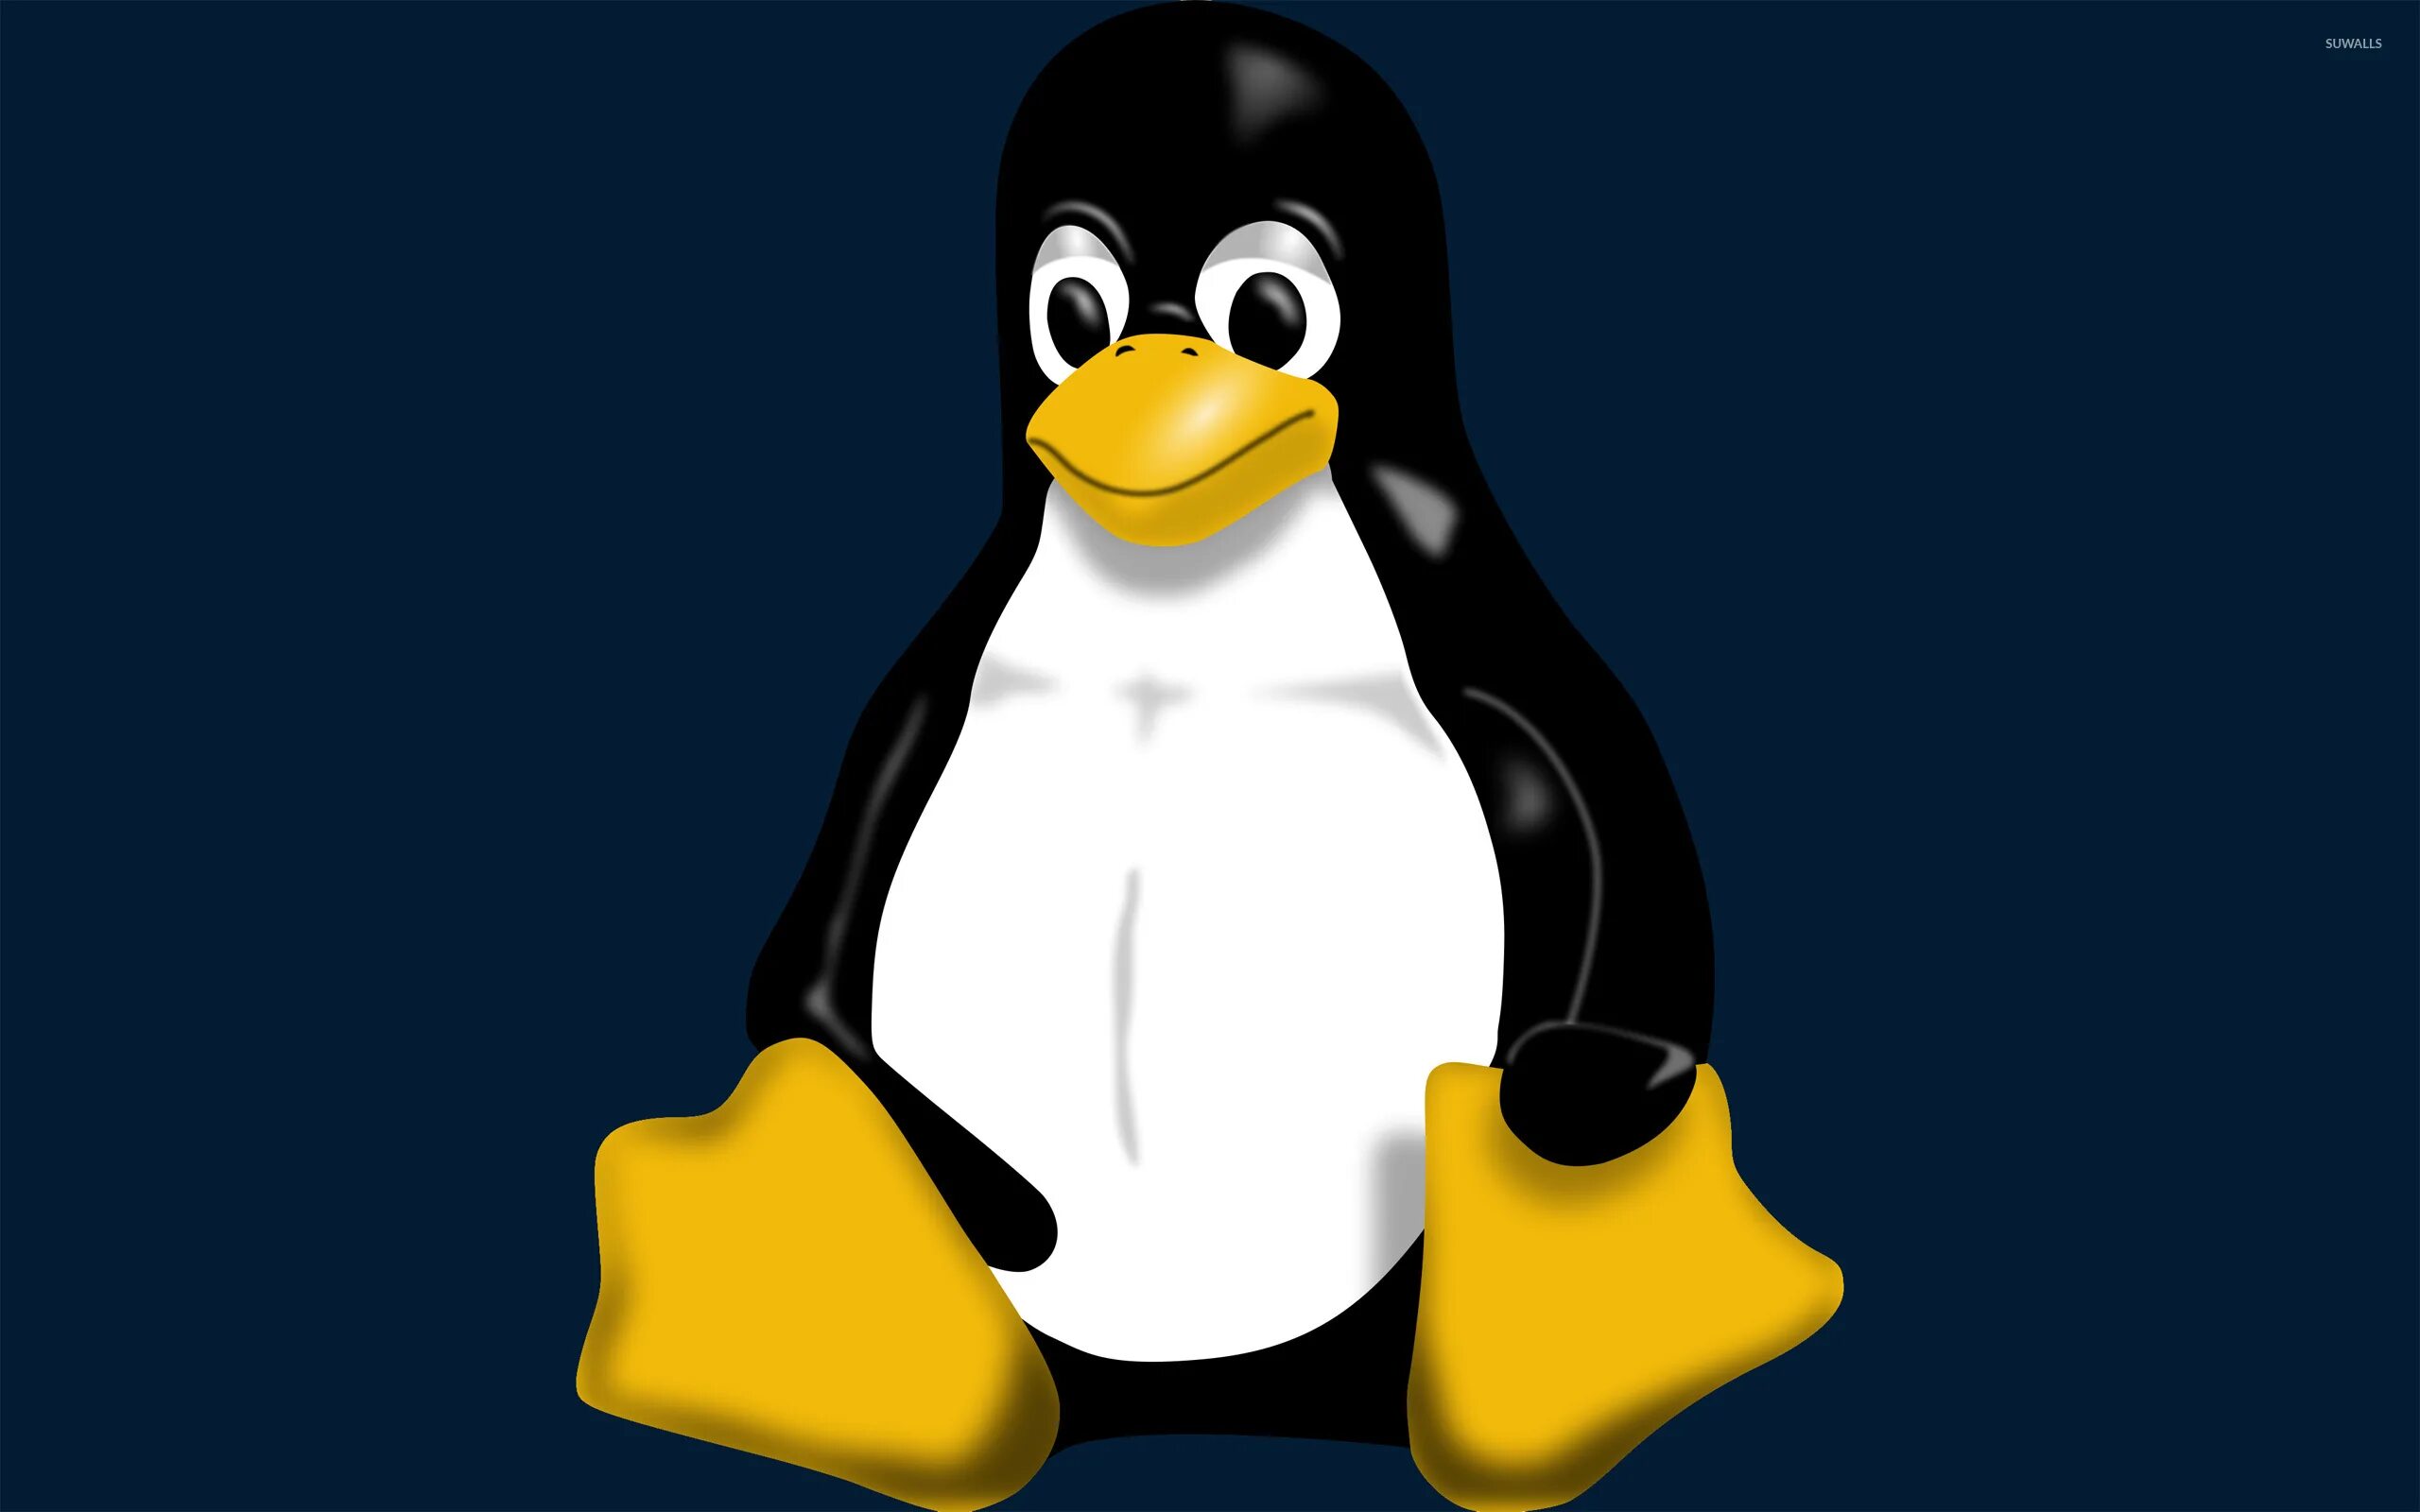 Изображения с расширением bmp. Рисунки с расширением bmp. Файлы с расширением bmp. Пингвин линукс. Bmp picture